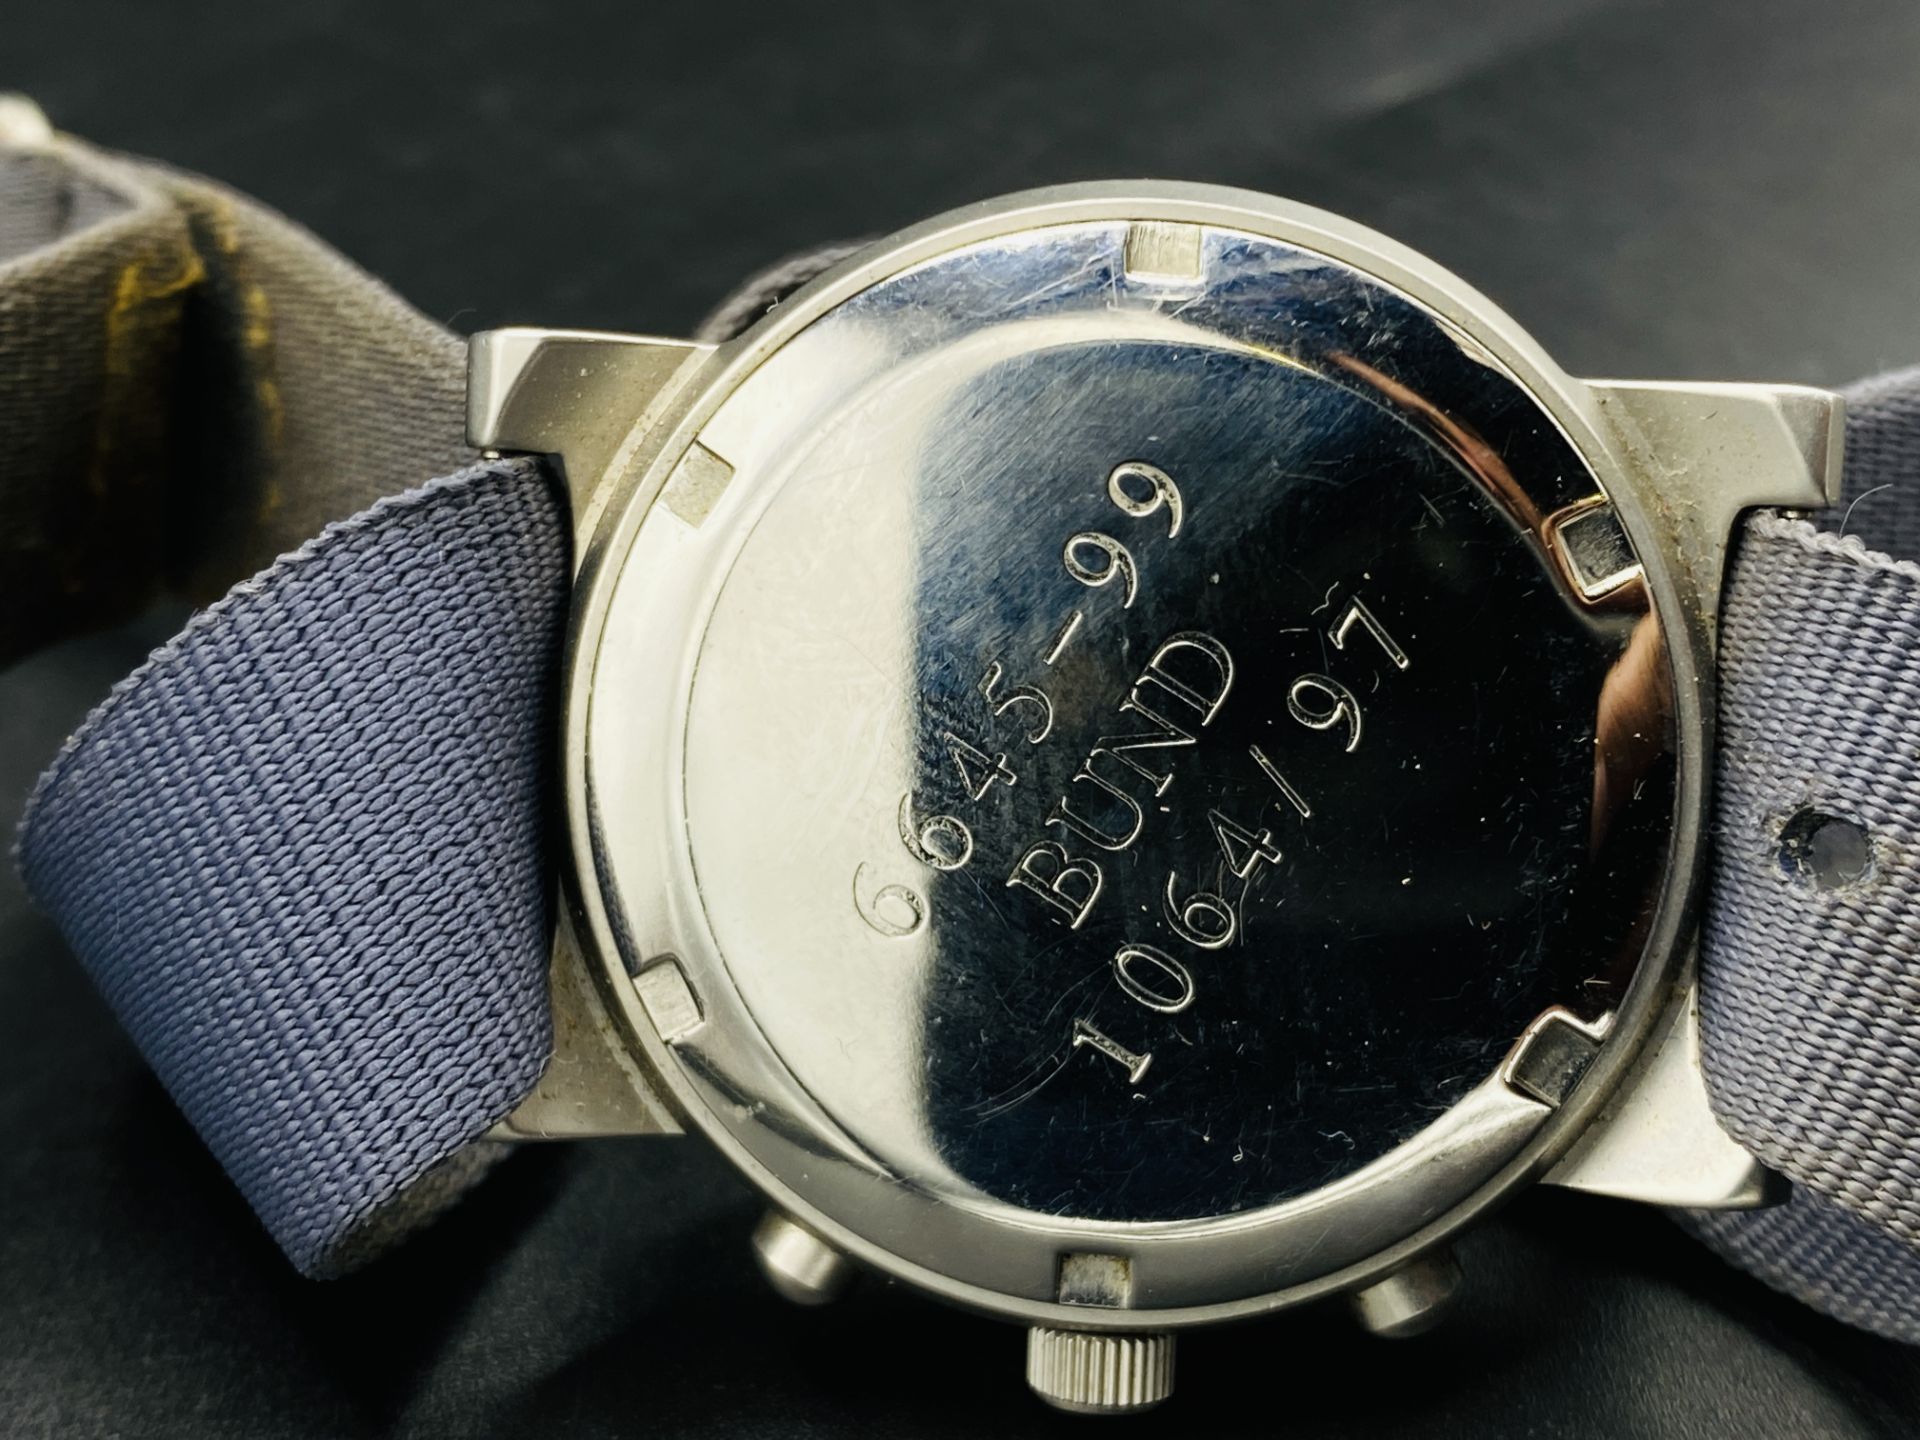 MWC military style wrist watch, going - Bild 3 aus 4